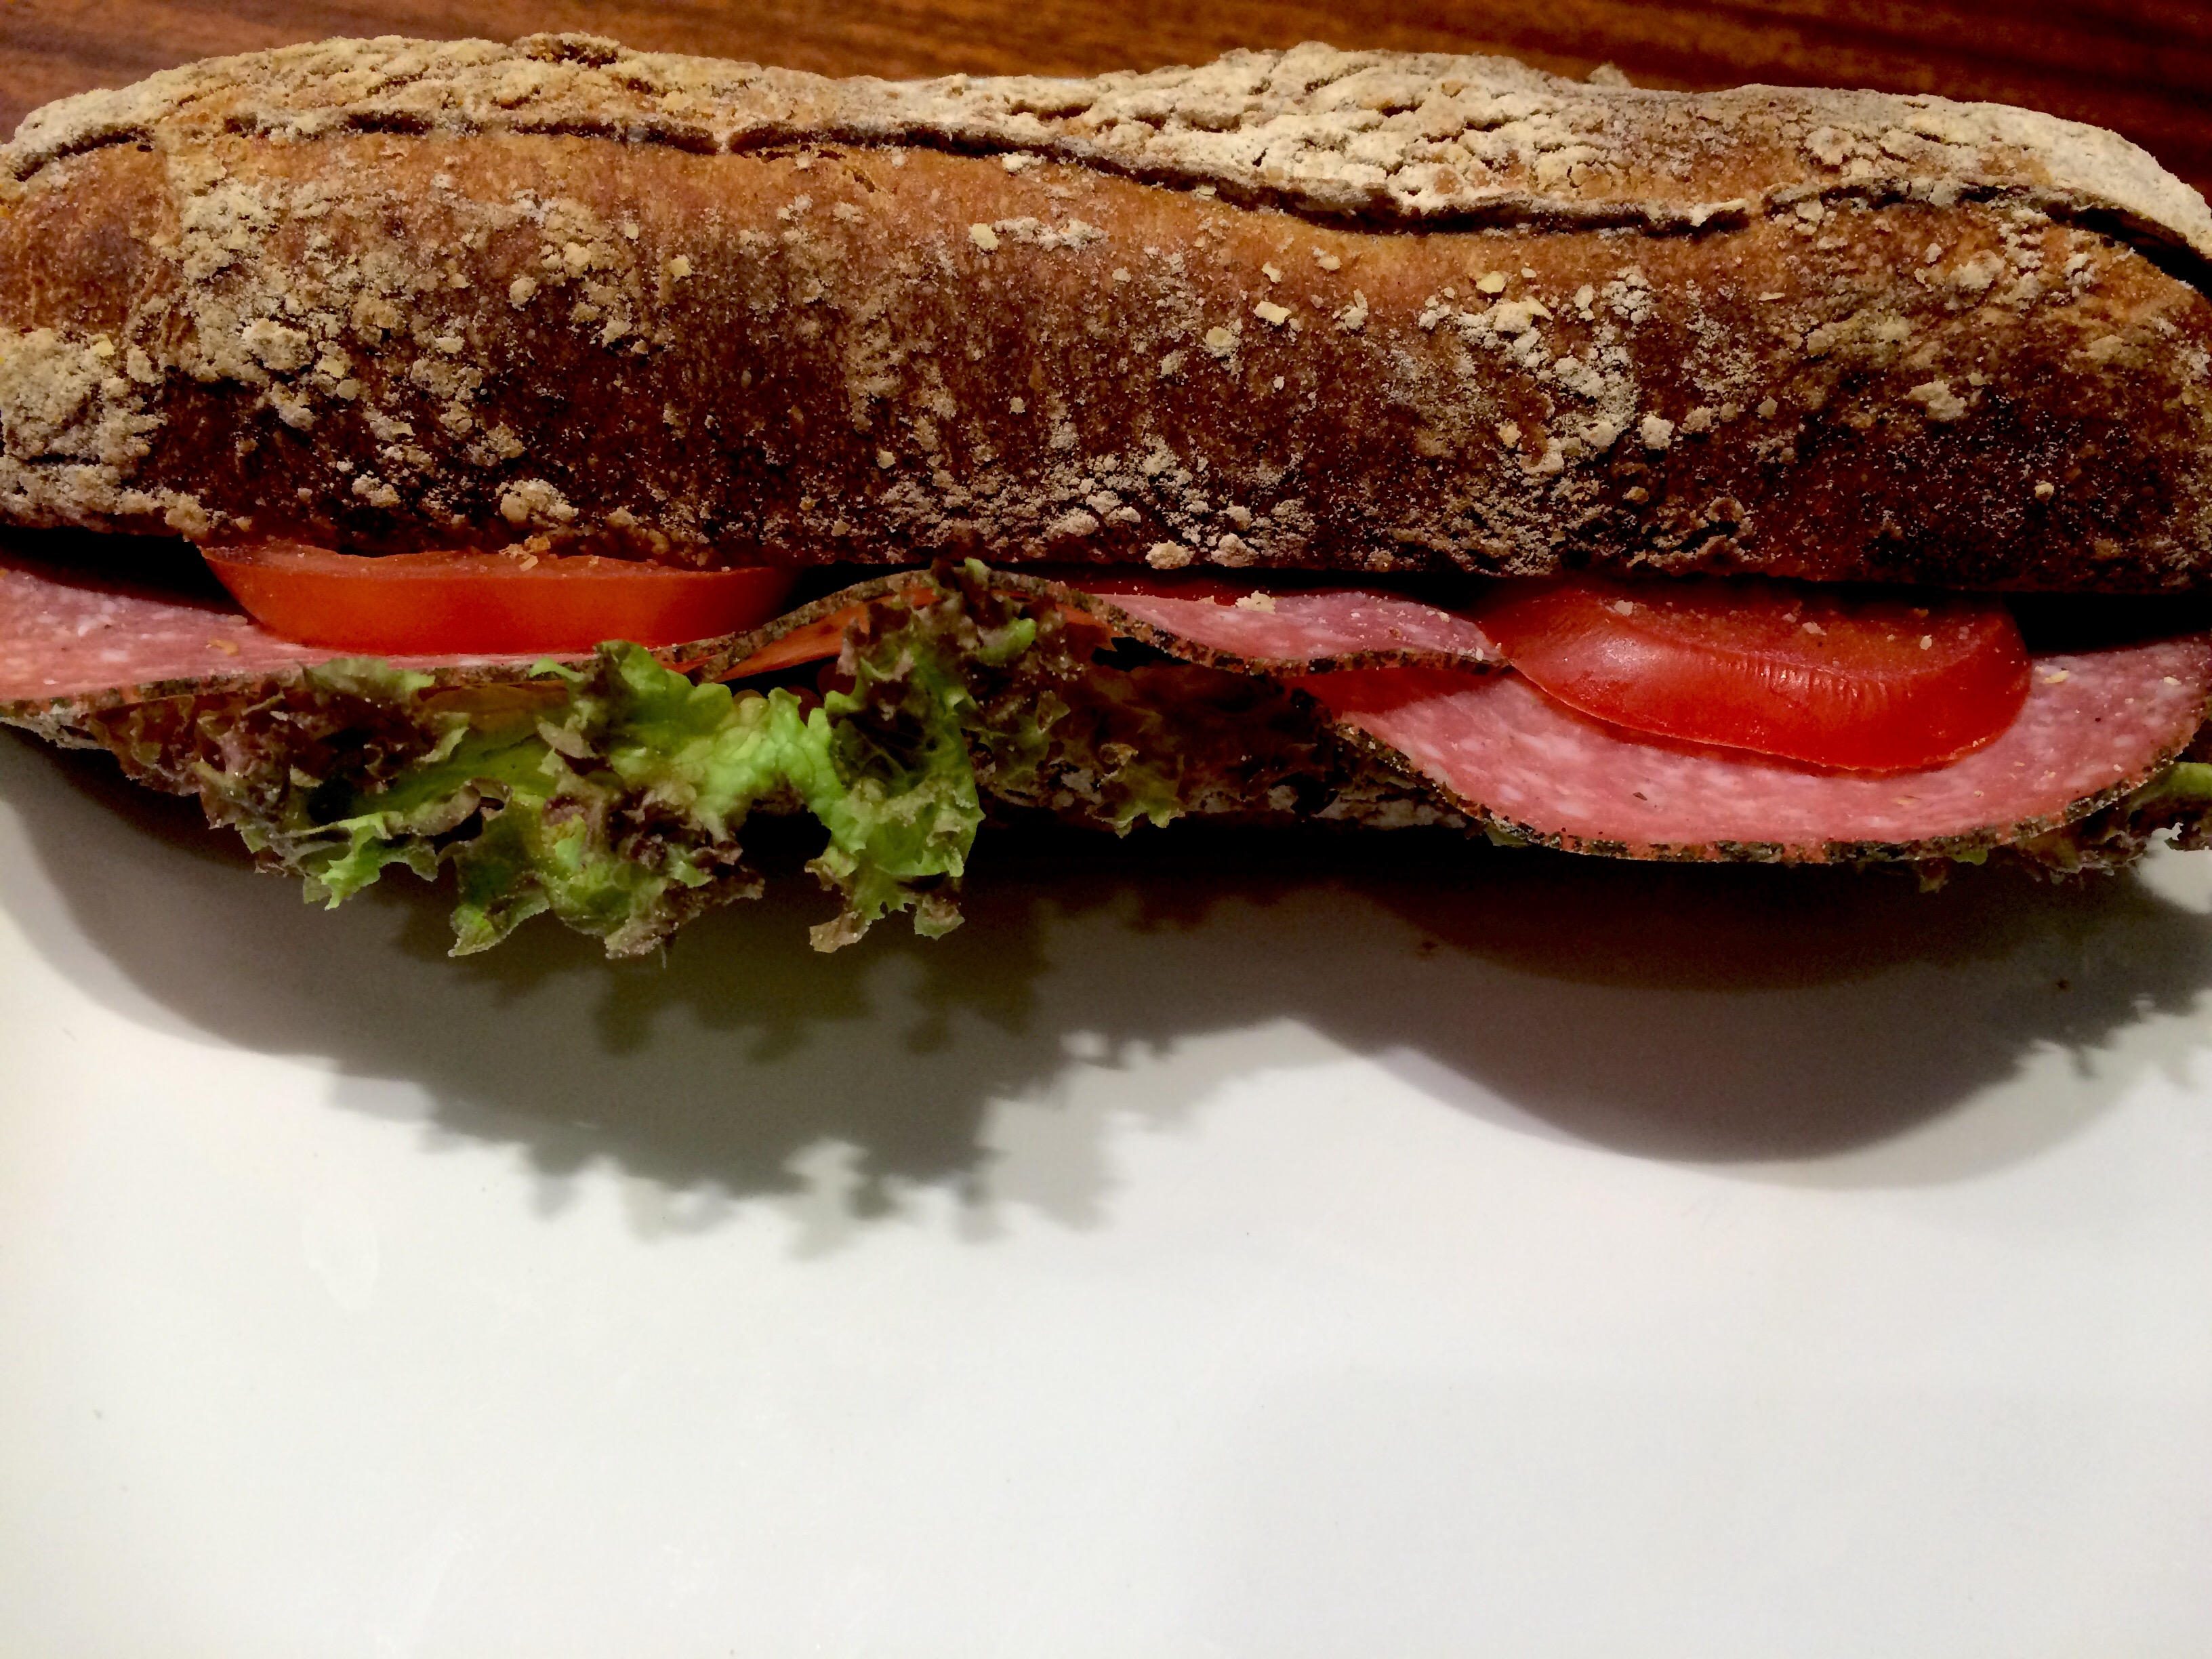 Salami Sandwich at Dusseldorf airport